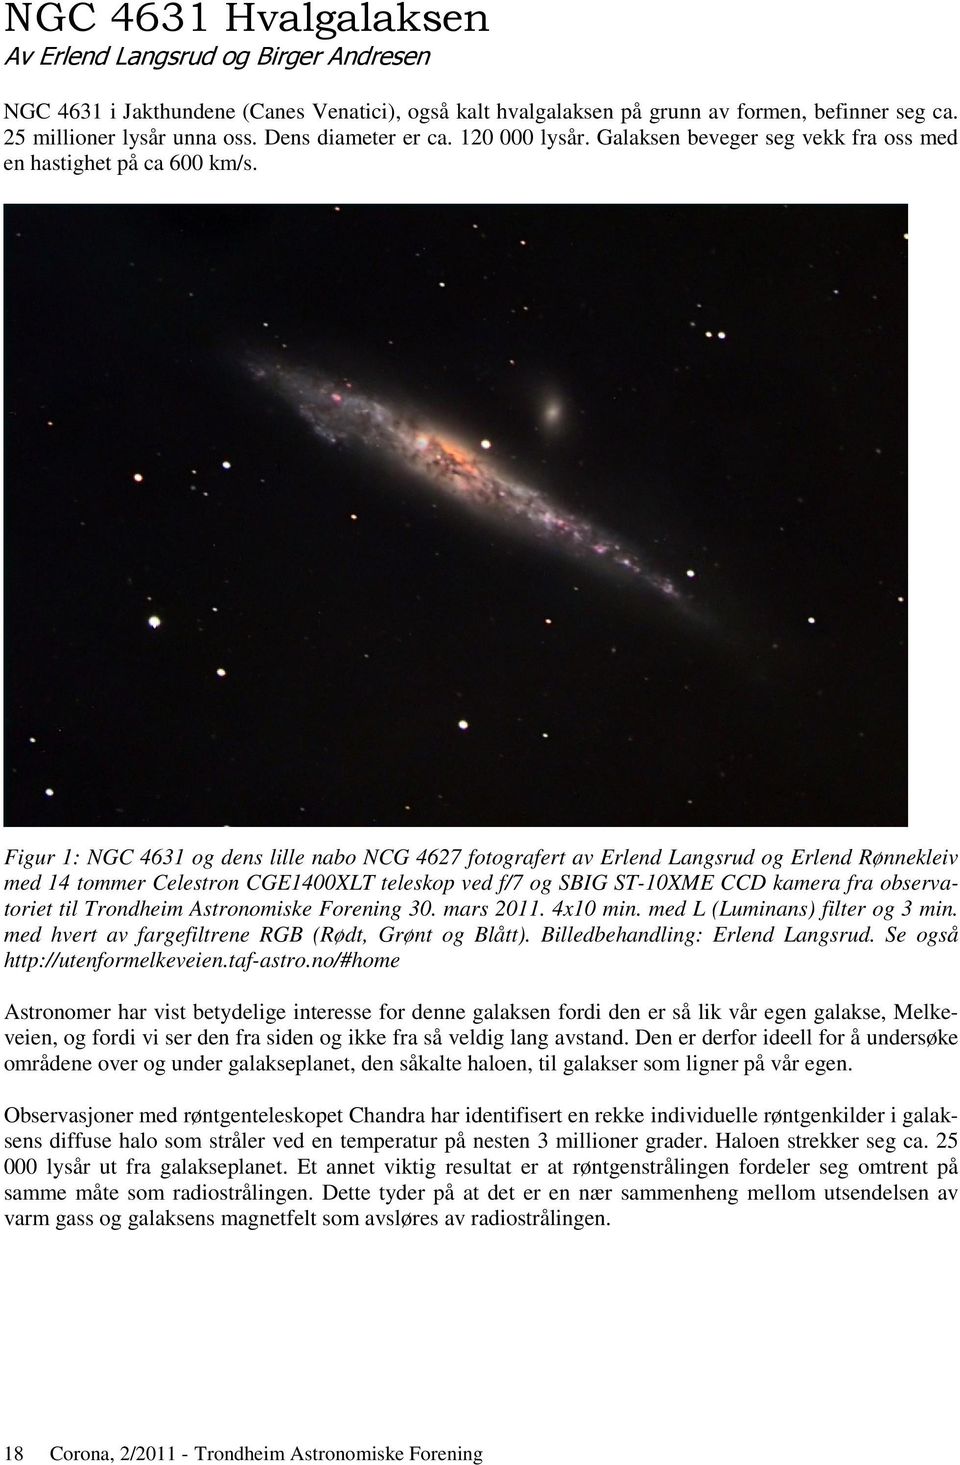 Figur 1: NGC 4631 og dens lille nabo NCG 4627 fotografert av Erlend Langsrud og Erlend Rønnekleiv med 14 tommer Celestron CGE1400XLT teleskop ved f/7 og SBIG ST-10XME CCD kamera fra observatoriet til